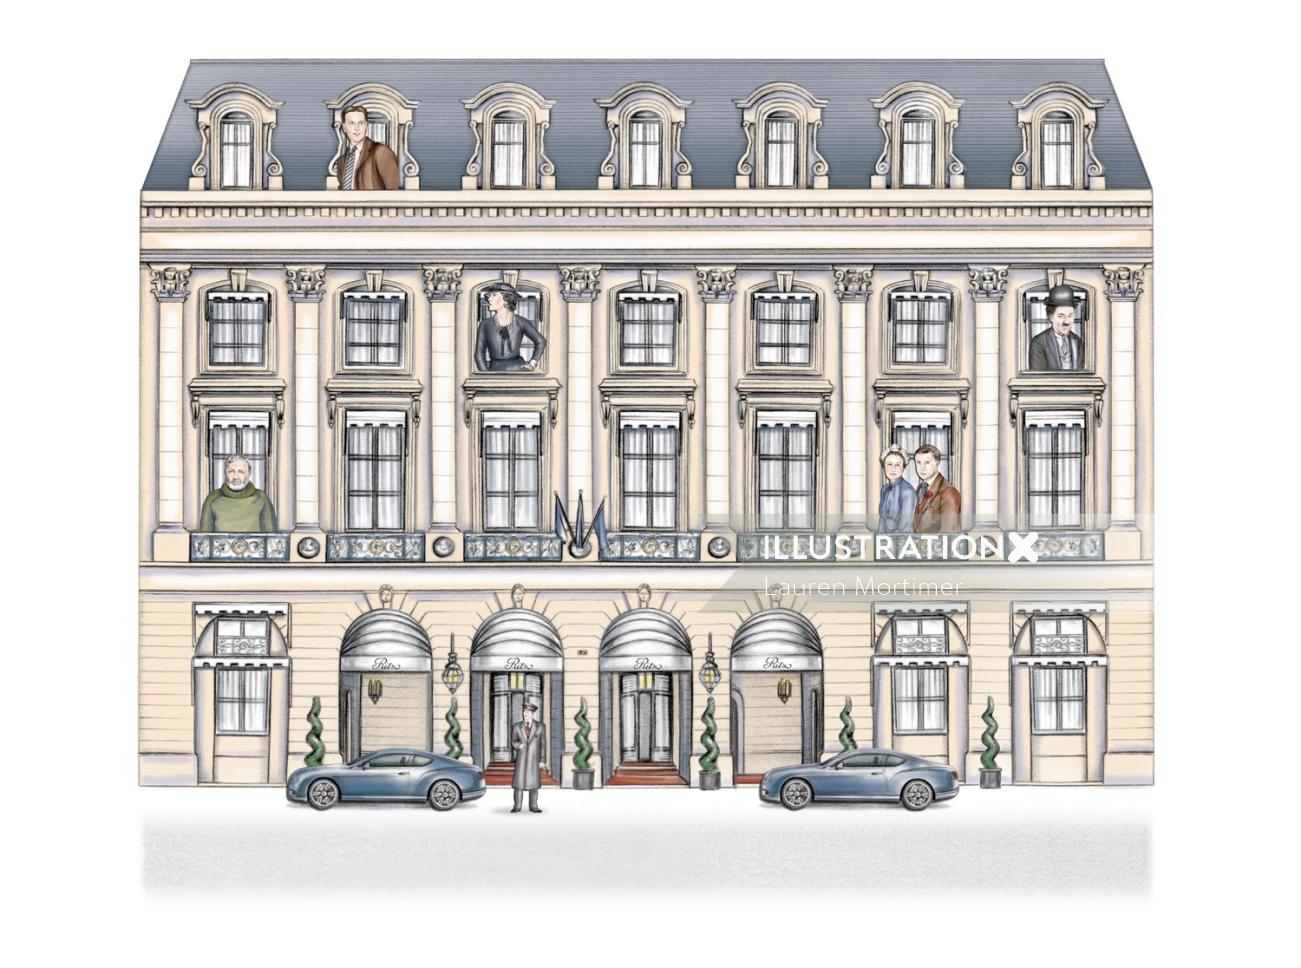 The Ritz Building in Paris